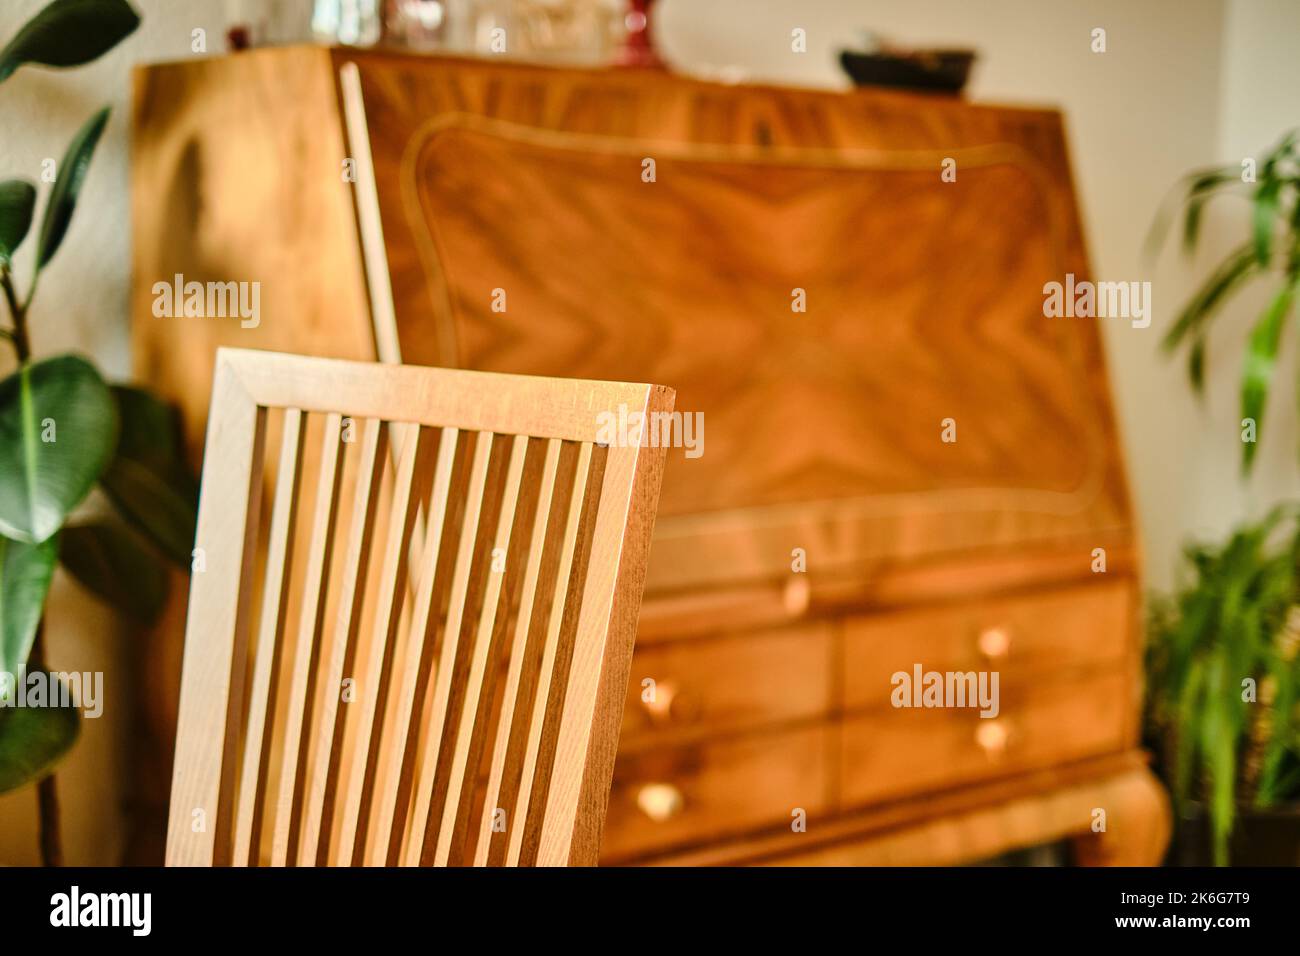 Immagine interna di una sedia in legno di faggio che passa dalla nitidezza alla sfocatura con un antico segretario fuori fuoco sullo sfondo. Foto Stock